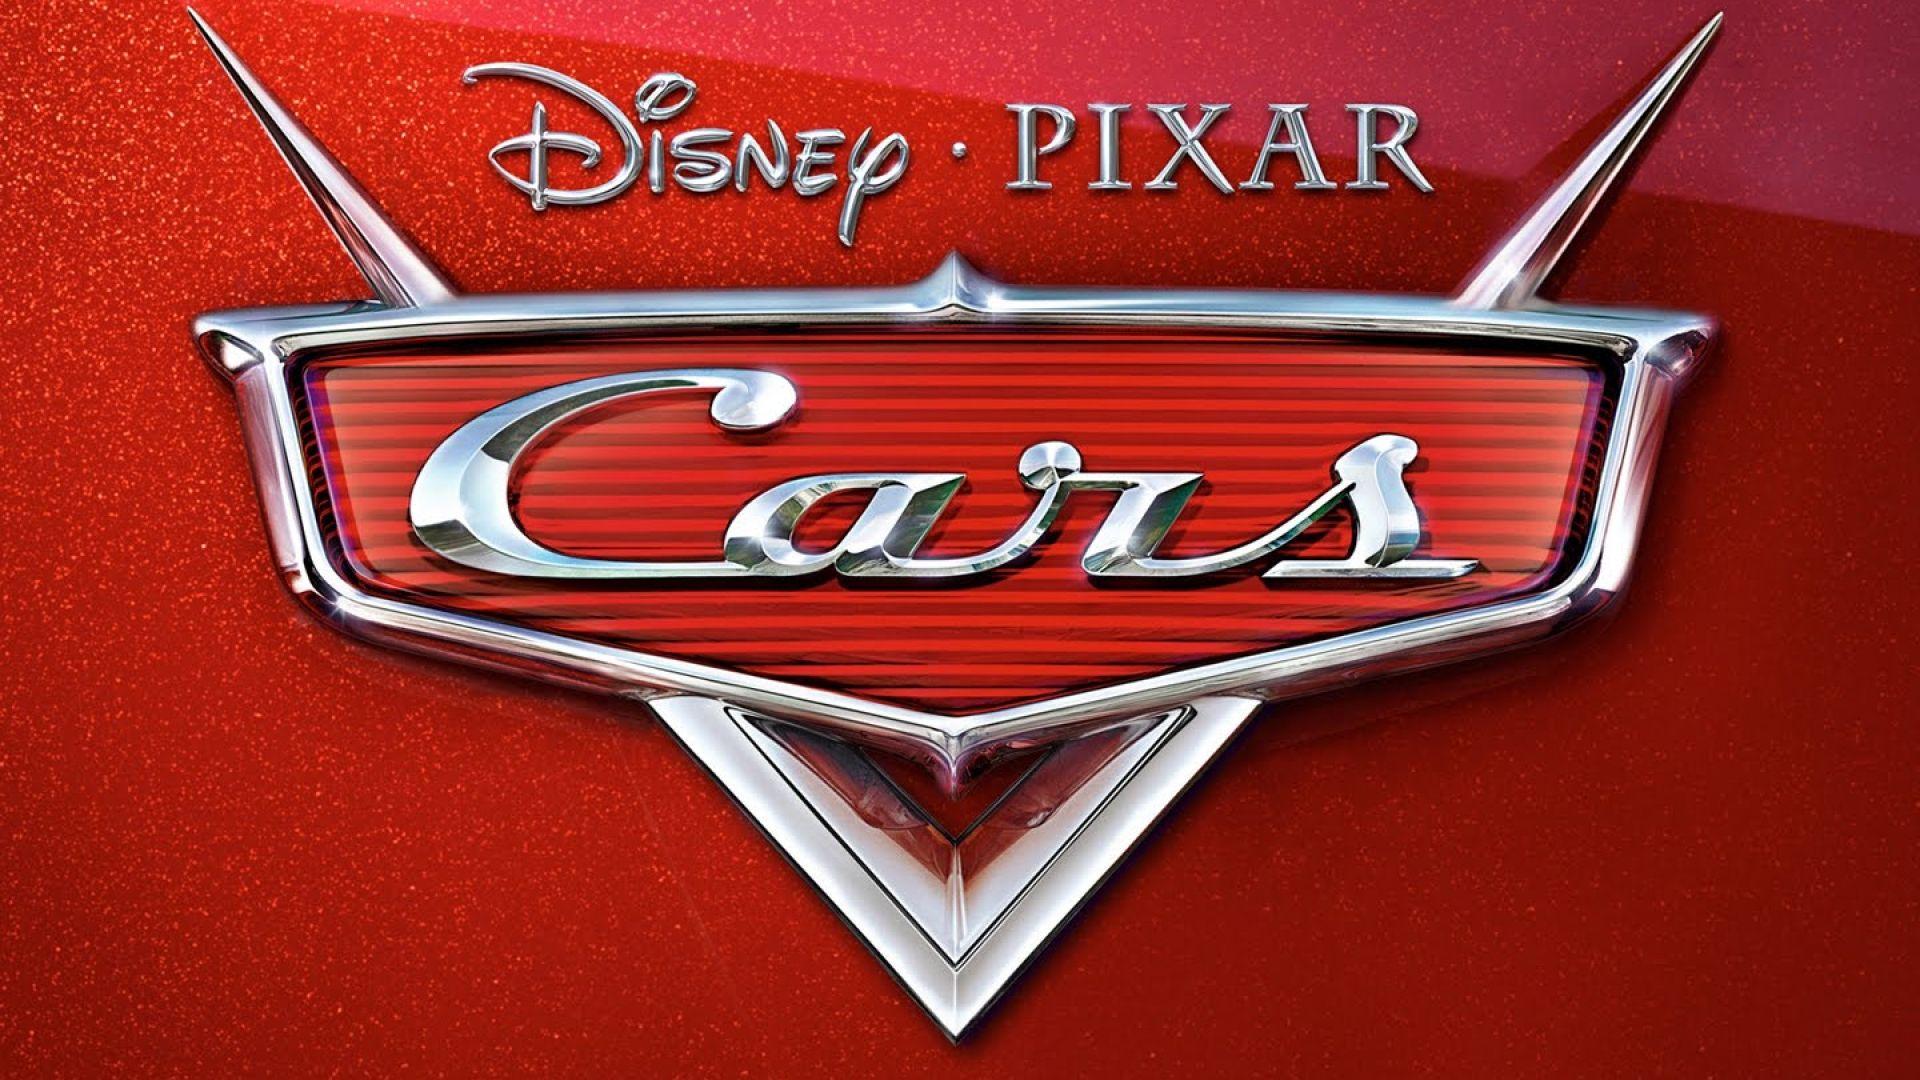 Disney Pixar Cars Logo - Disney Pixar Cars Wallpaper